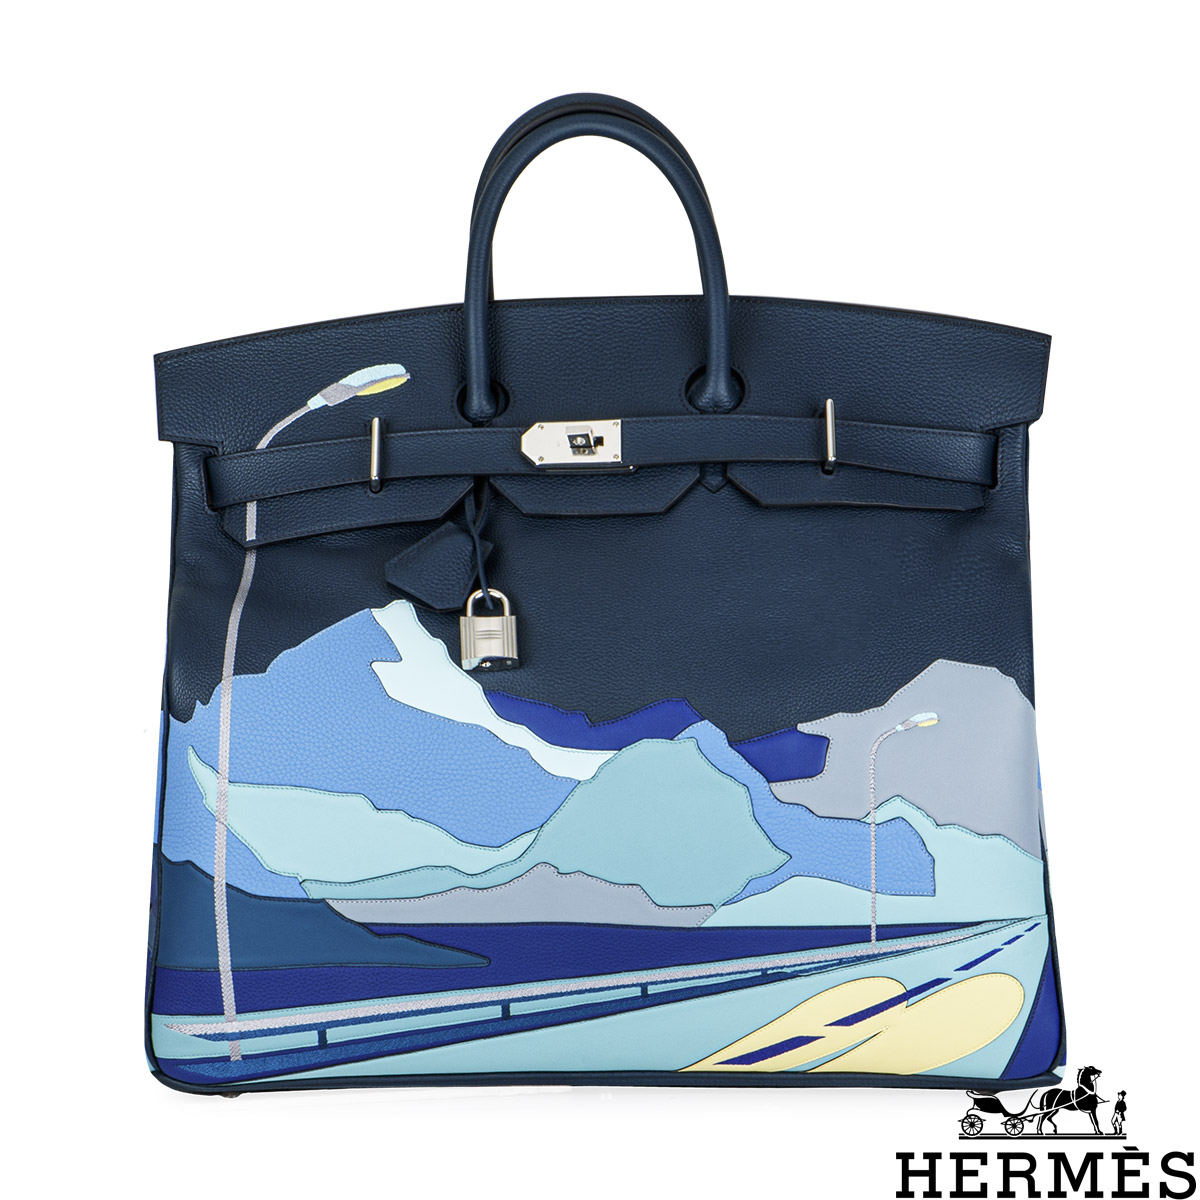 Hermès Birkin 50'Endless Road - LuxuryVintageBudapest